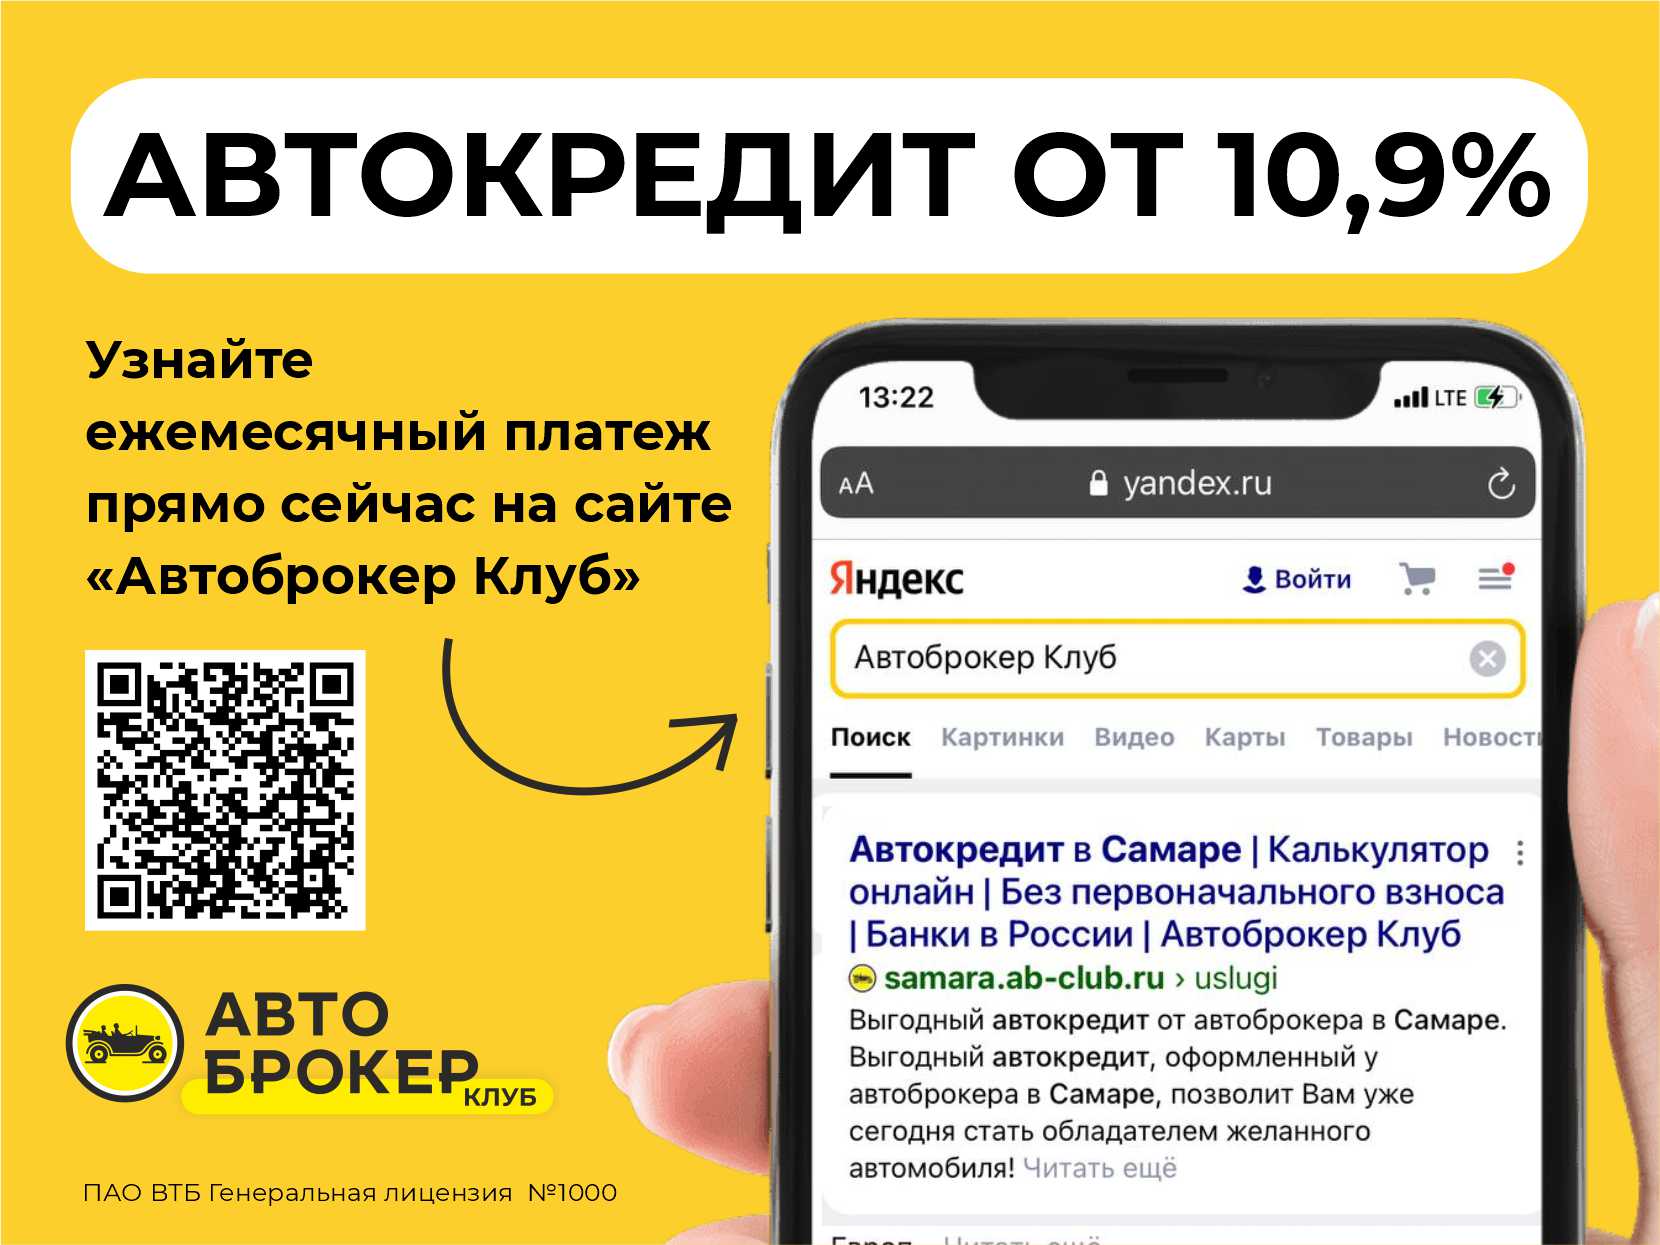 Купить б/у Renault Duster, 2019 год, 109 л.с. в Волгограде